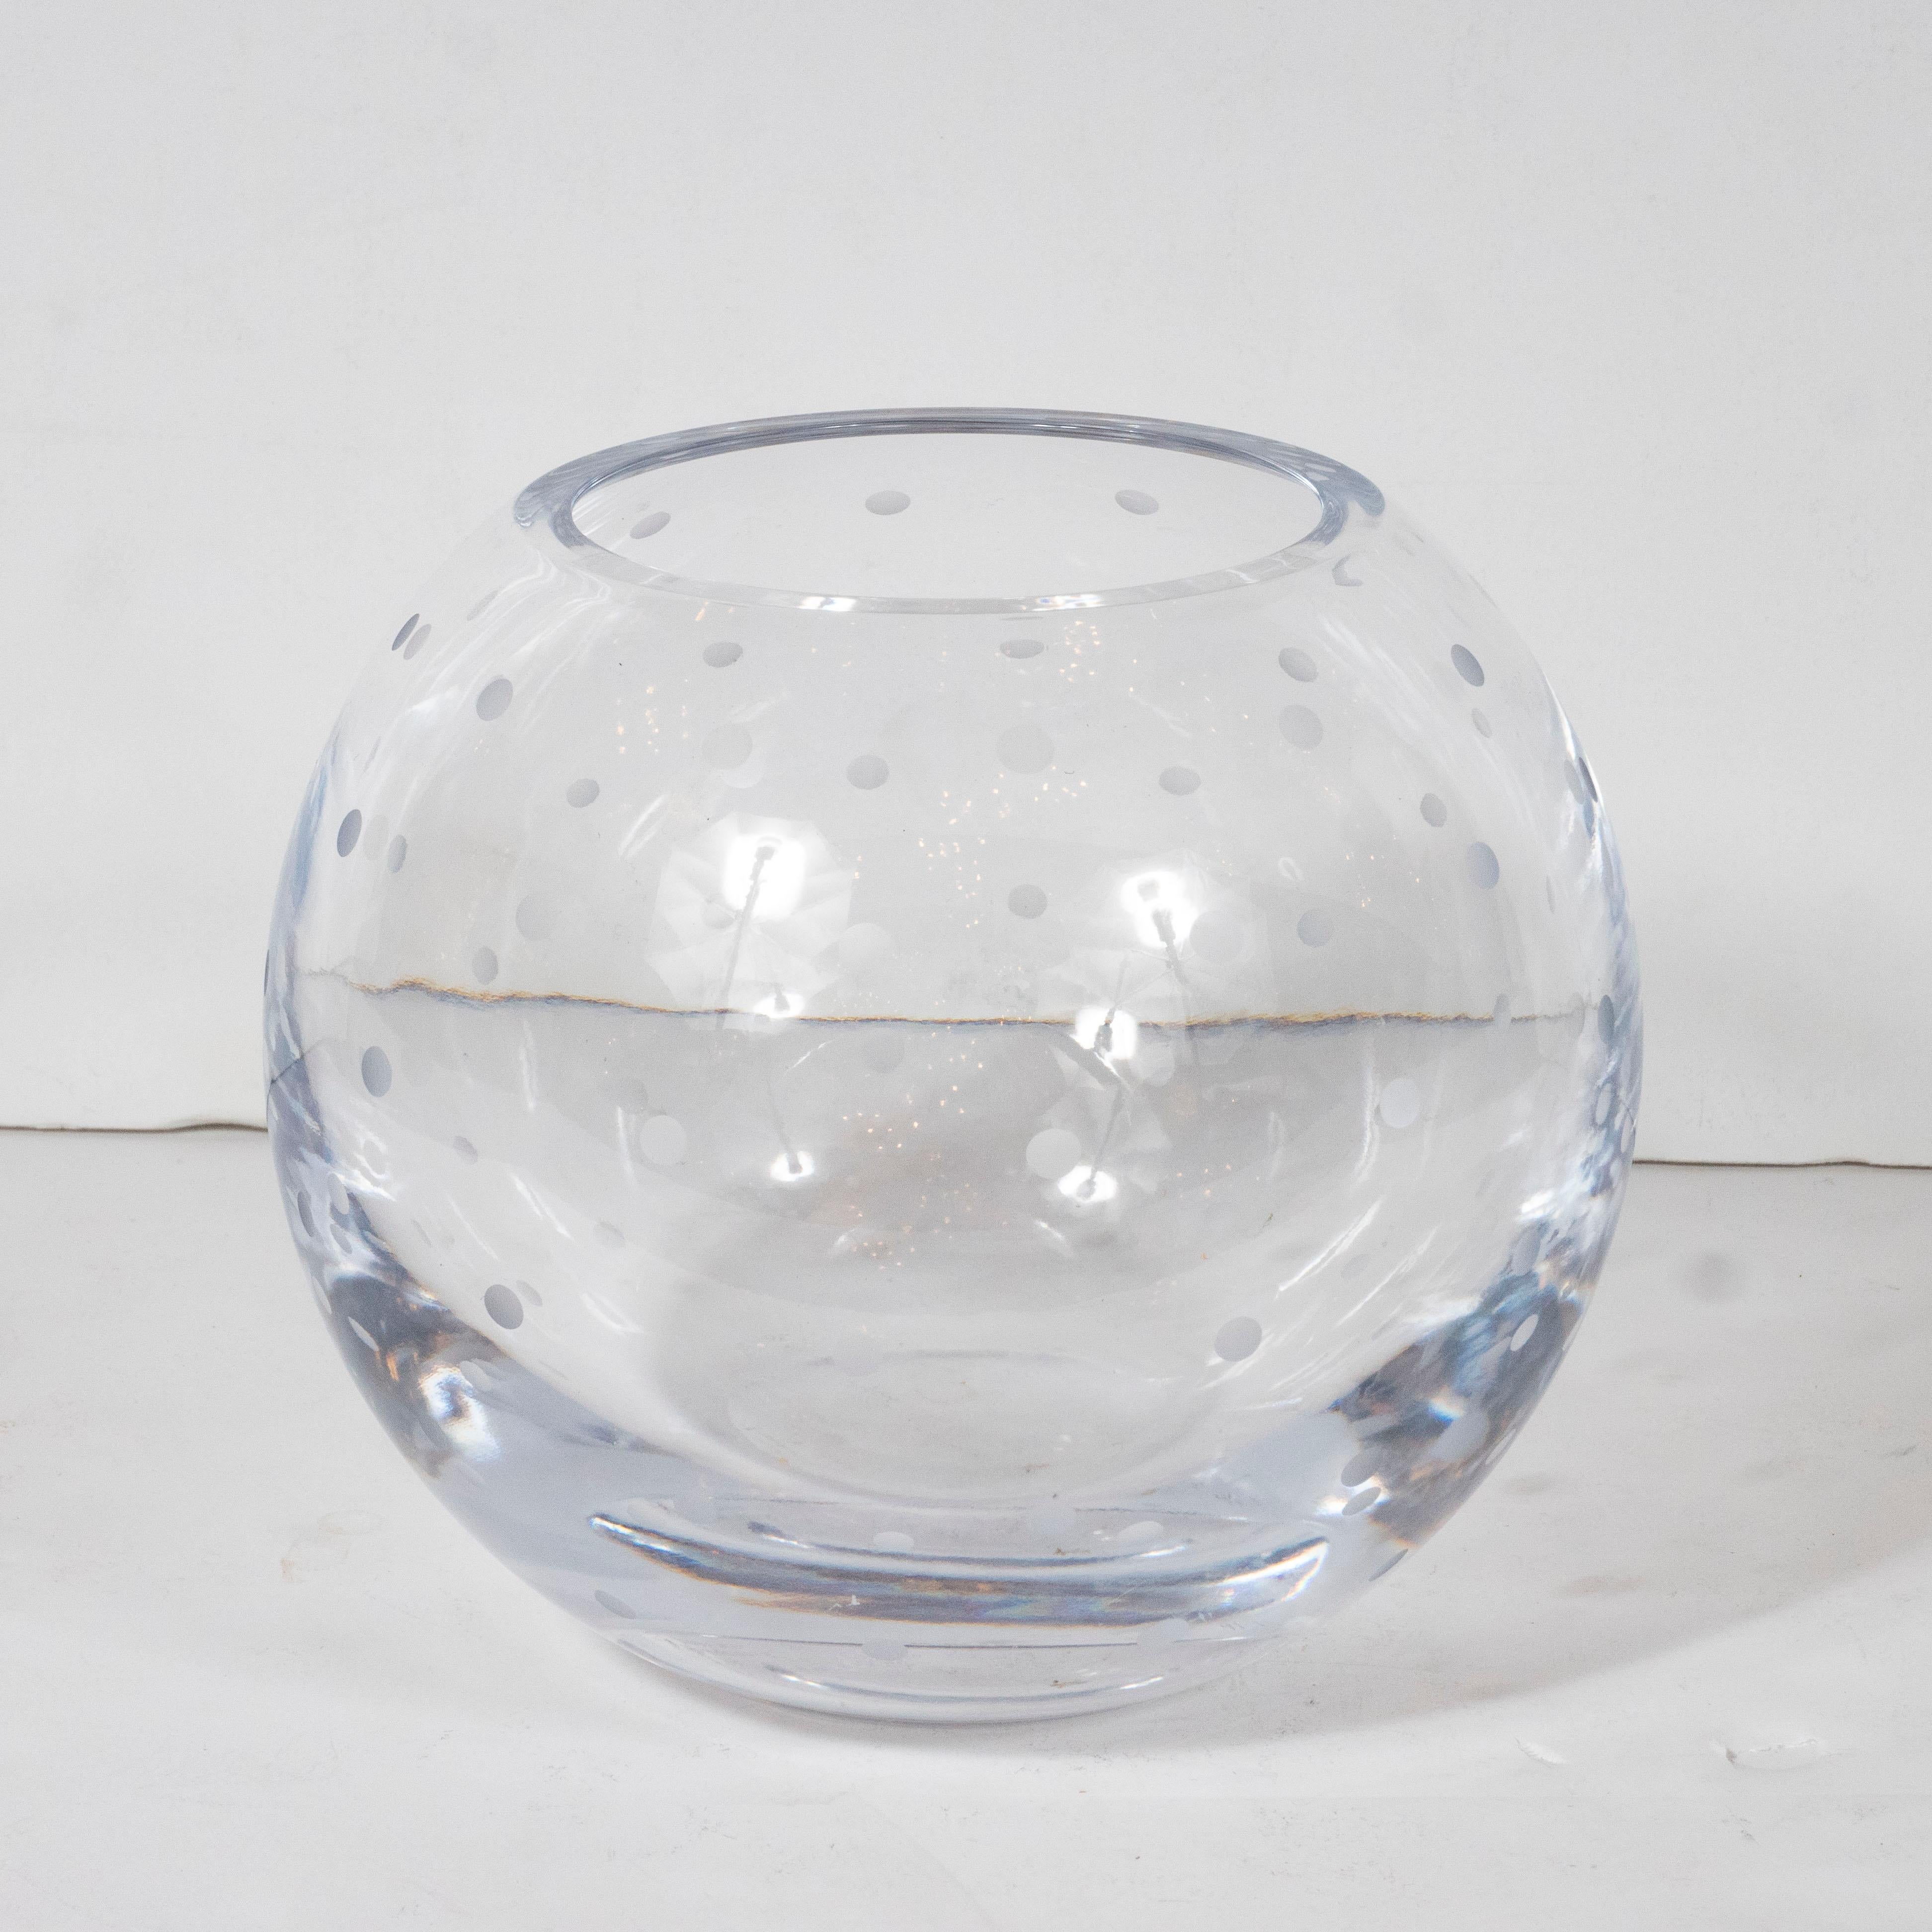 Diese modernistische Vase wurde im 20. Jahrhundert in den Vereinigten Staaten hergestellt. Sie hat eine kugelförmige Form mit gleichmäßig verteilten, mattierten Punkten, die in den durchscheinenden Körper des Stücks geätzt sind. Mit seinen klaren,